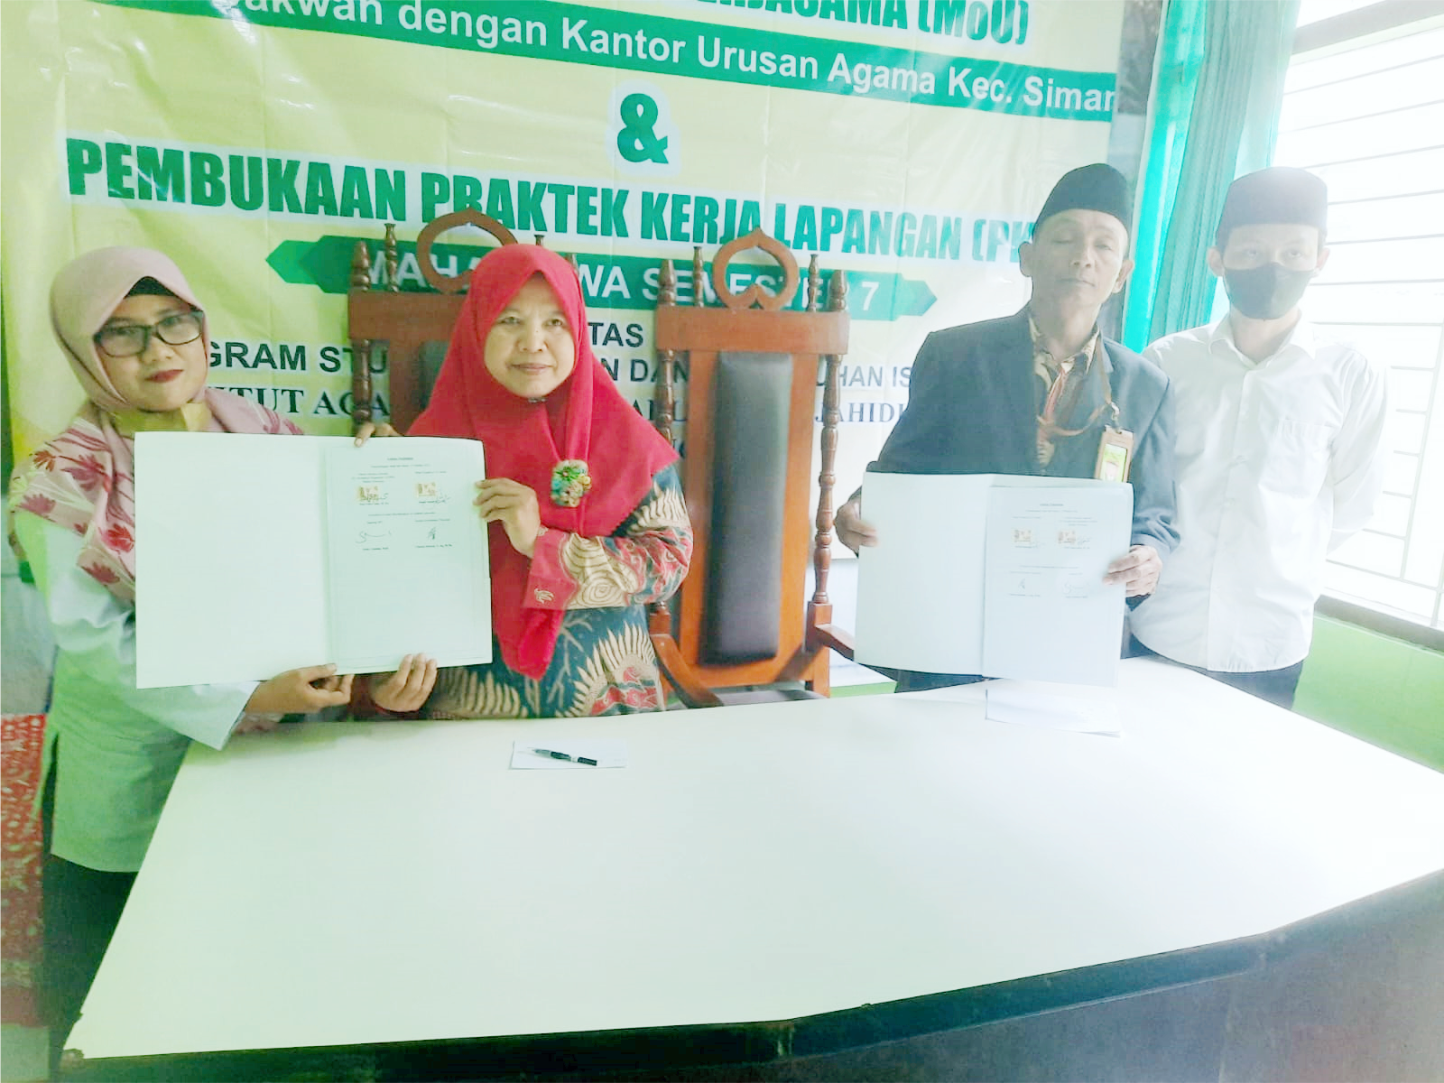 Penandatanganan Kerjasama (MoU) Antara Fakultas Dakwah dan Kantor Urusan Agama (KUA) Kecamatan Siman Ponorogo